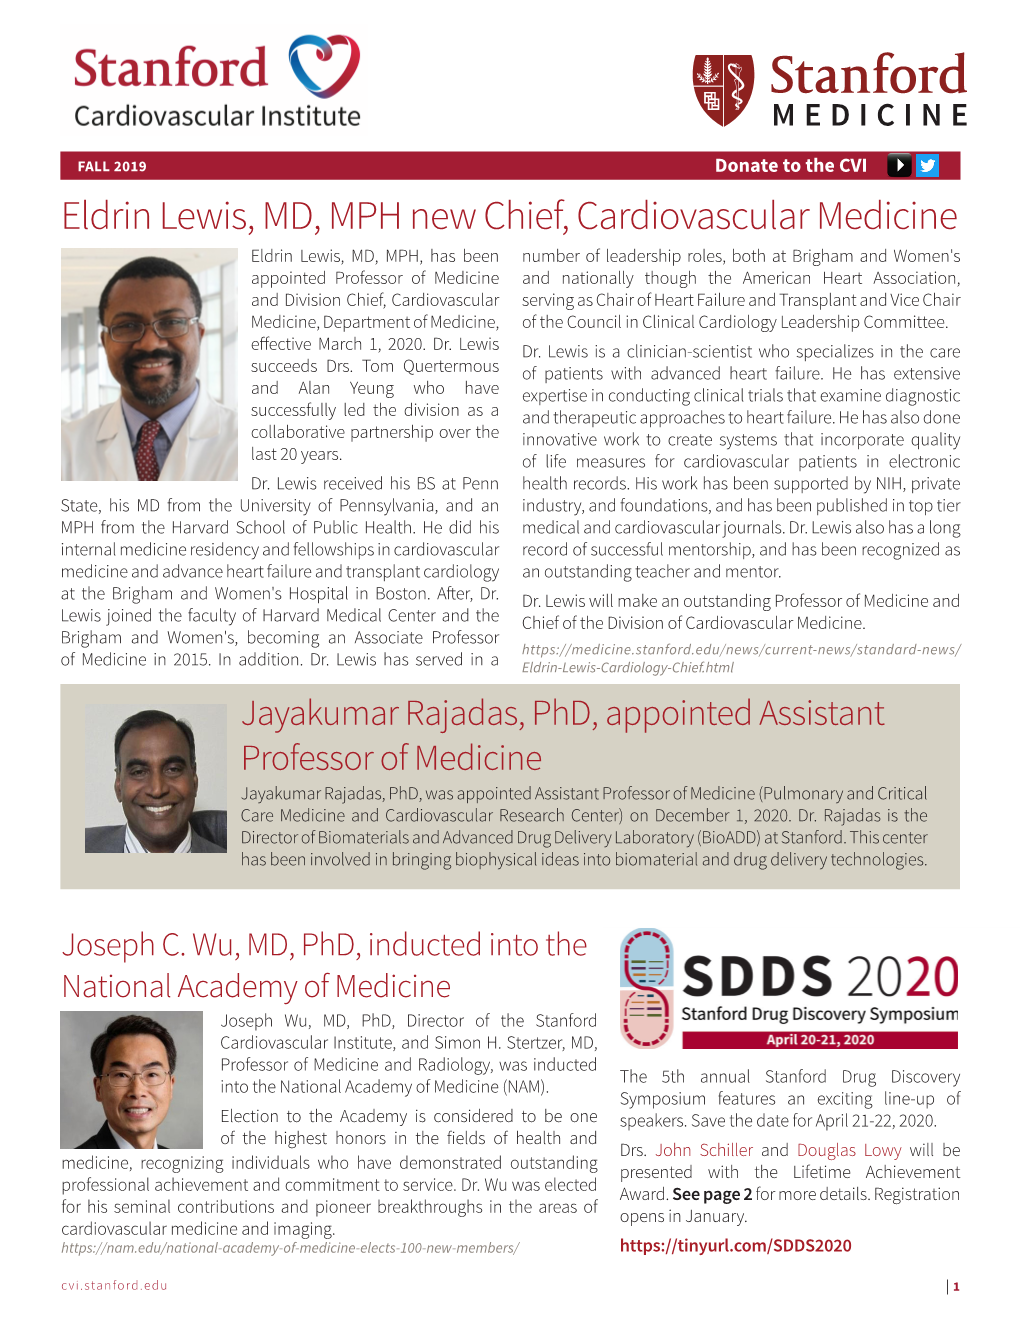 Eldrin Lewis, MD, MPH New Chief, Cardiovascular Medicine